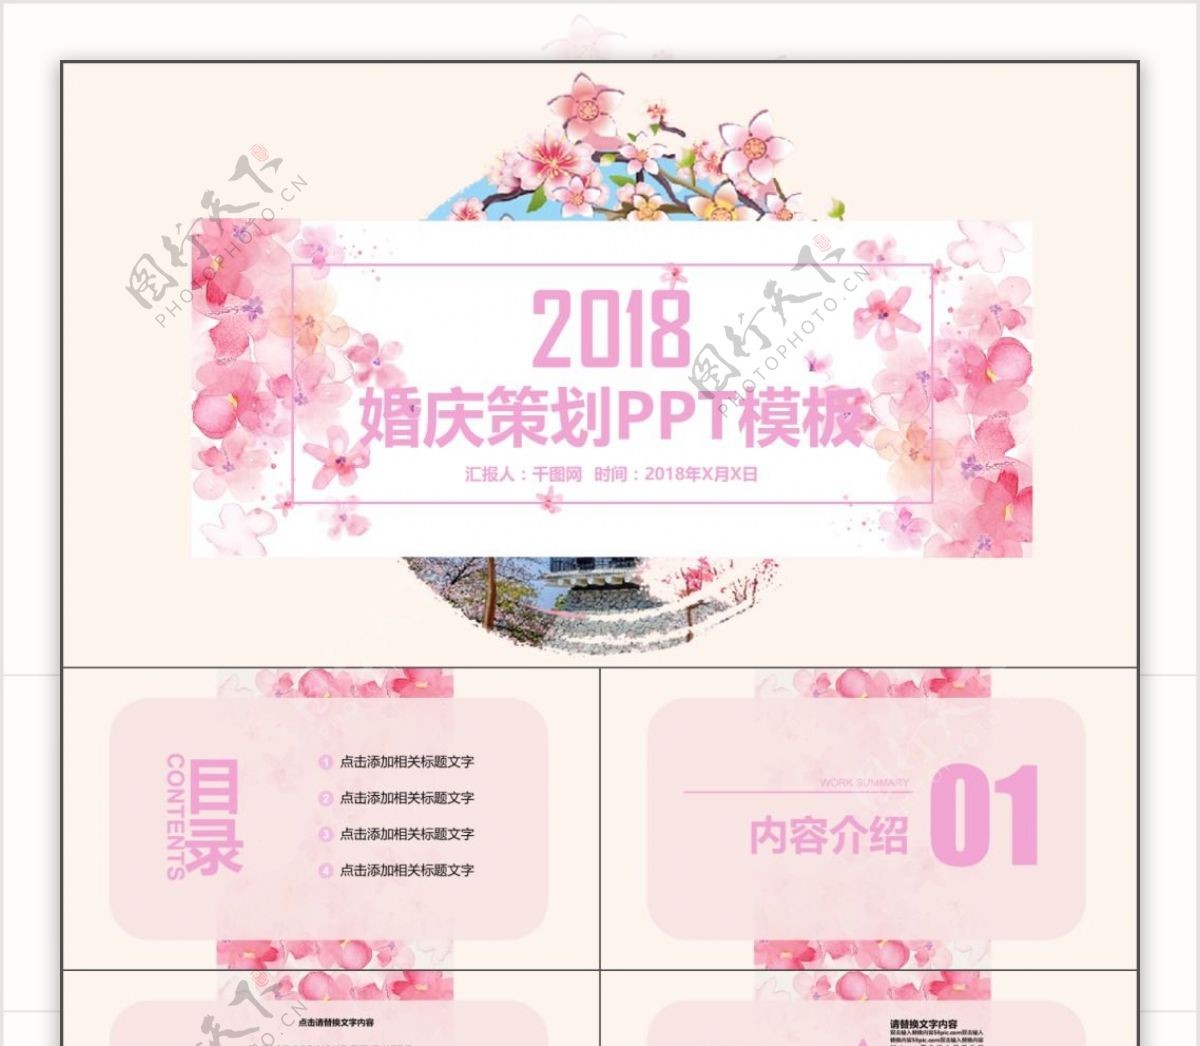 浪漫清新粉红婚庆策划产品宣传PPT模板